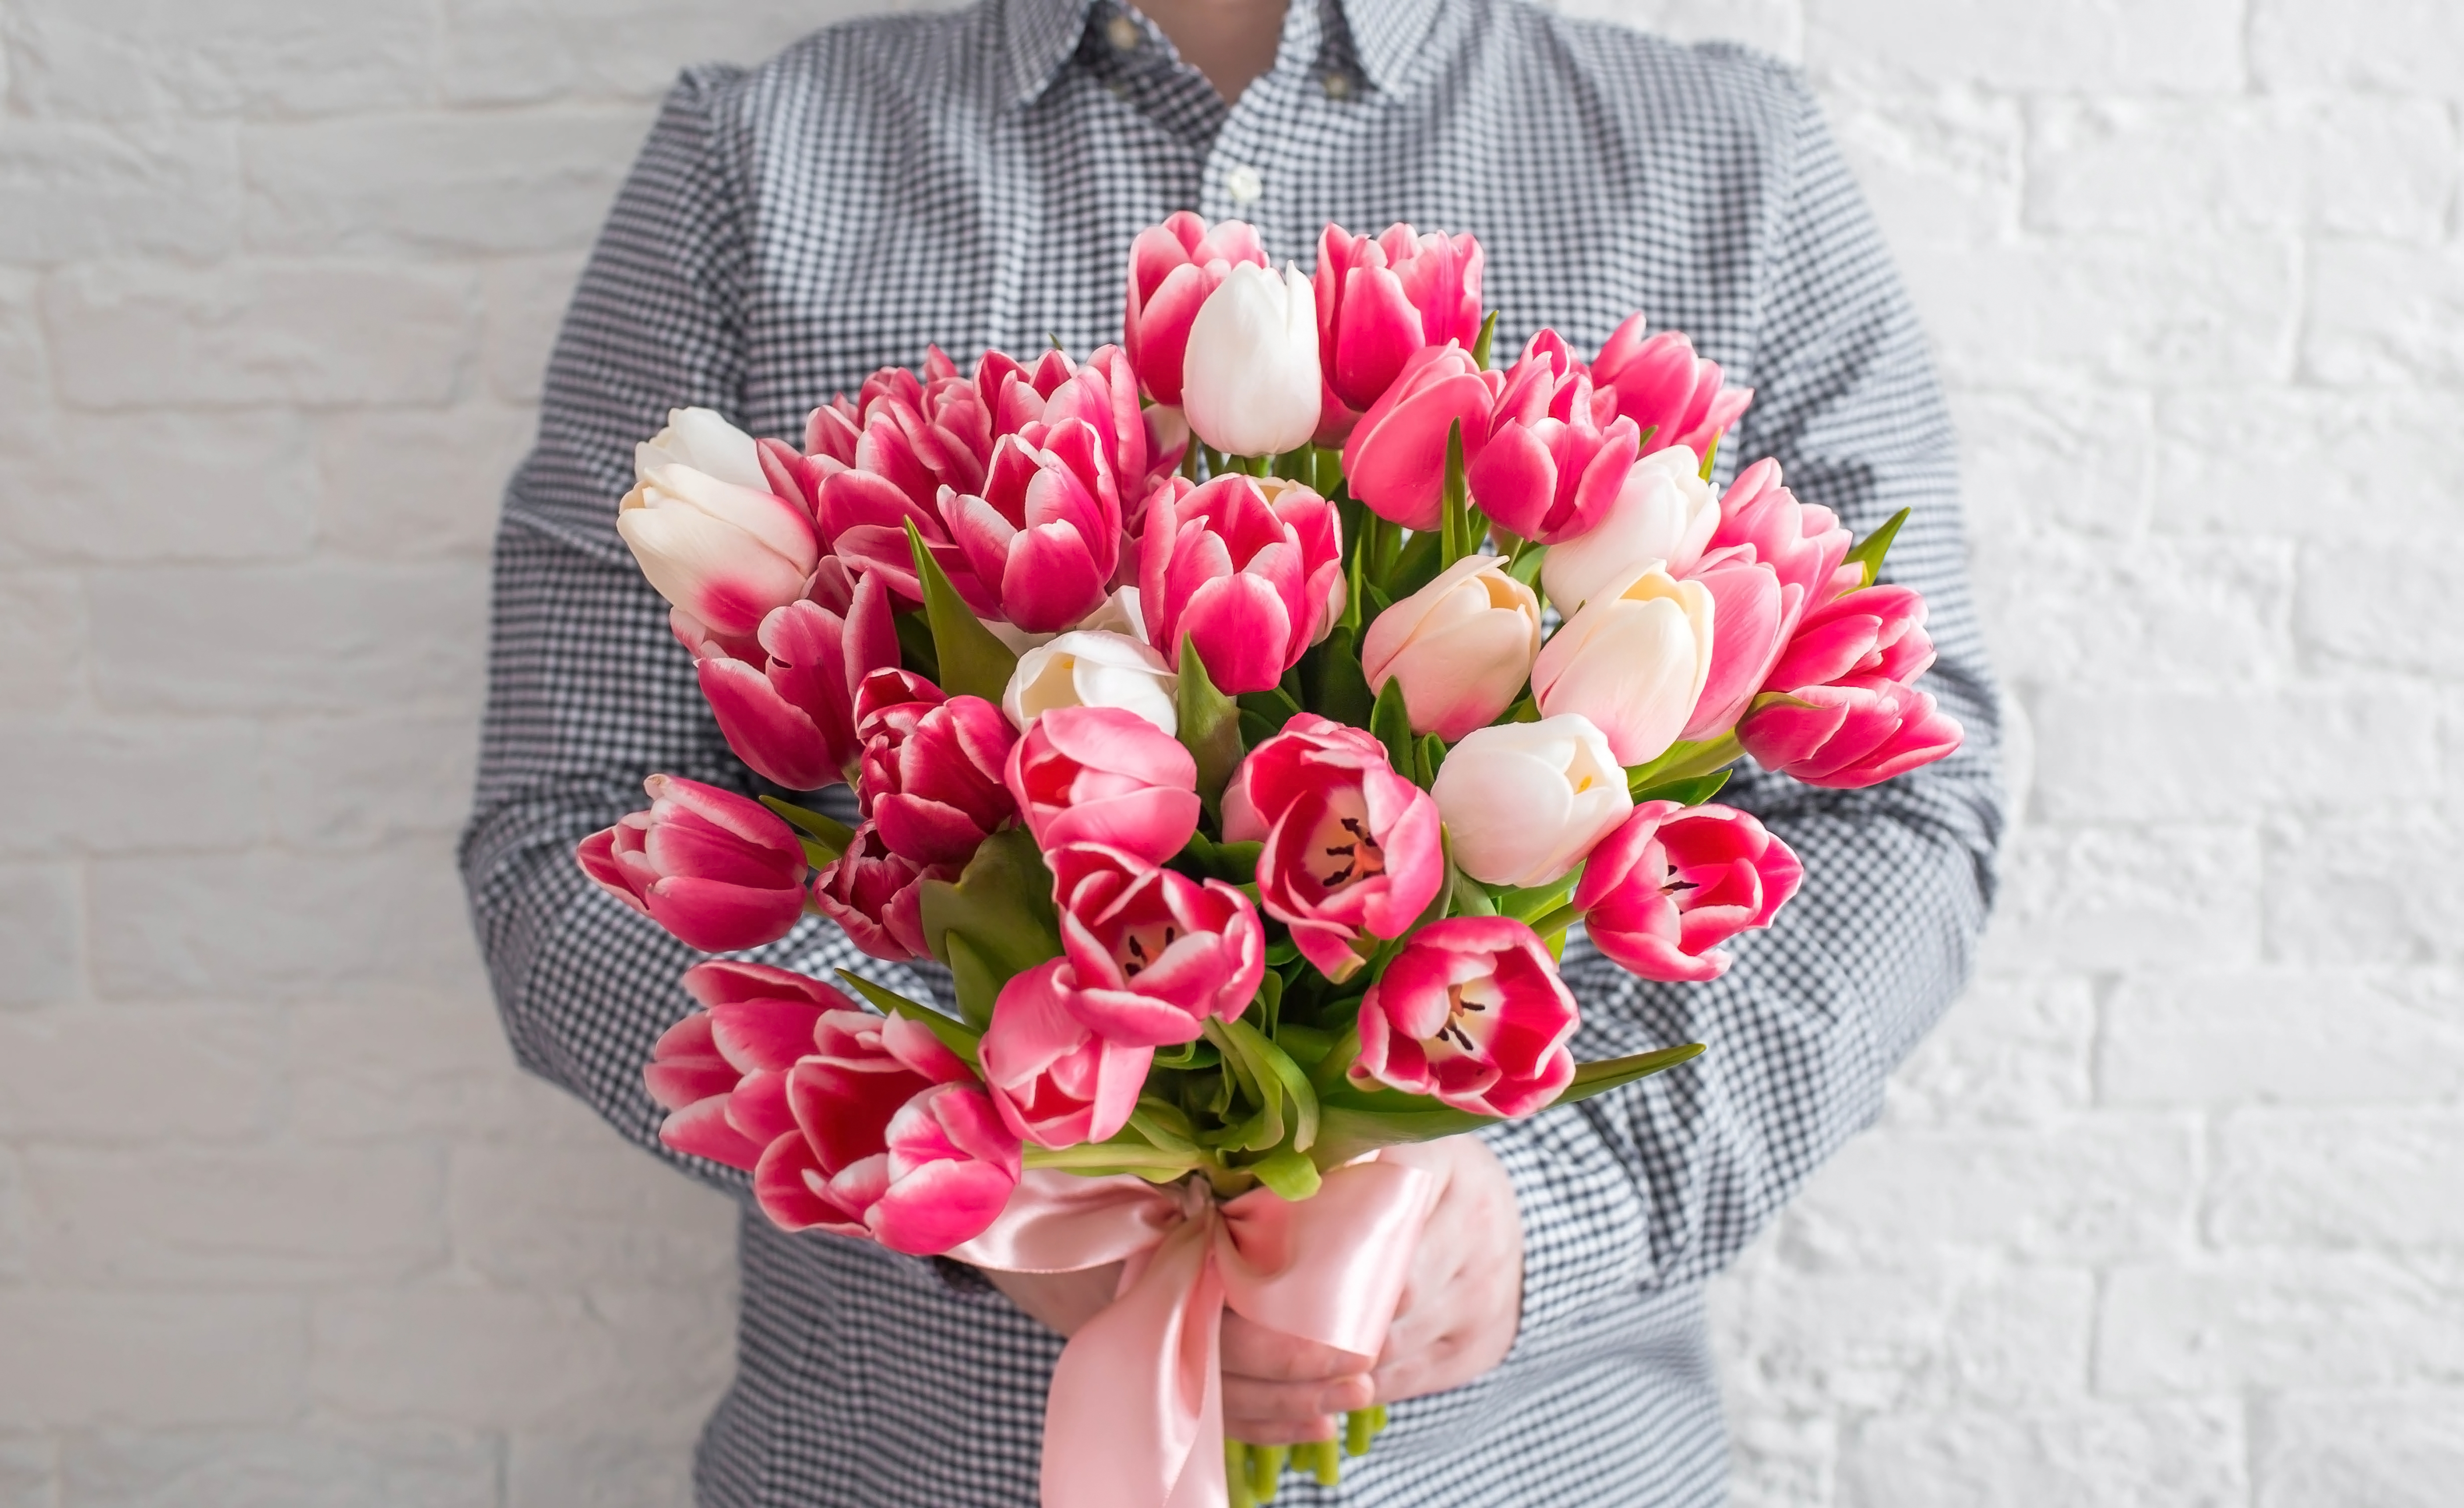 Ein junger Mann hält Blumen | Quelle: Shutterstock